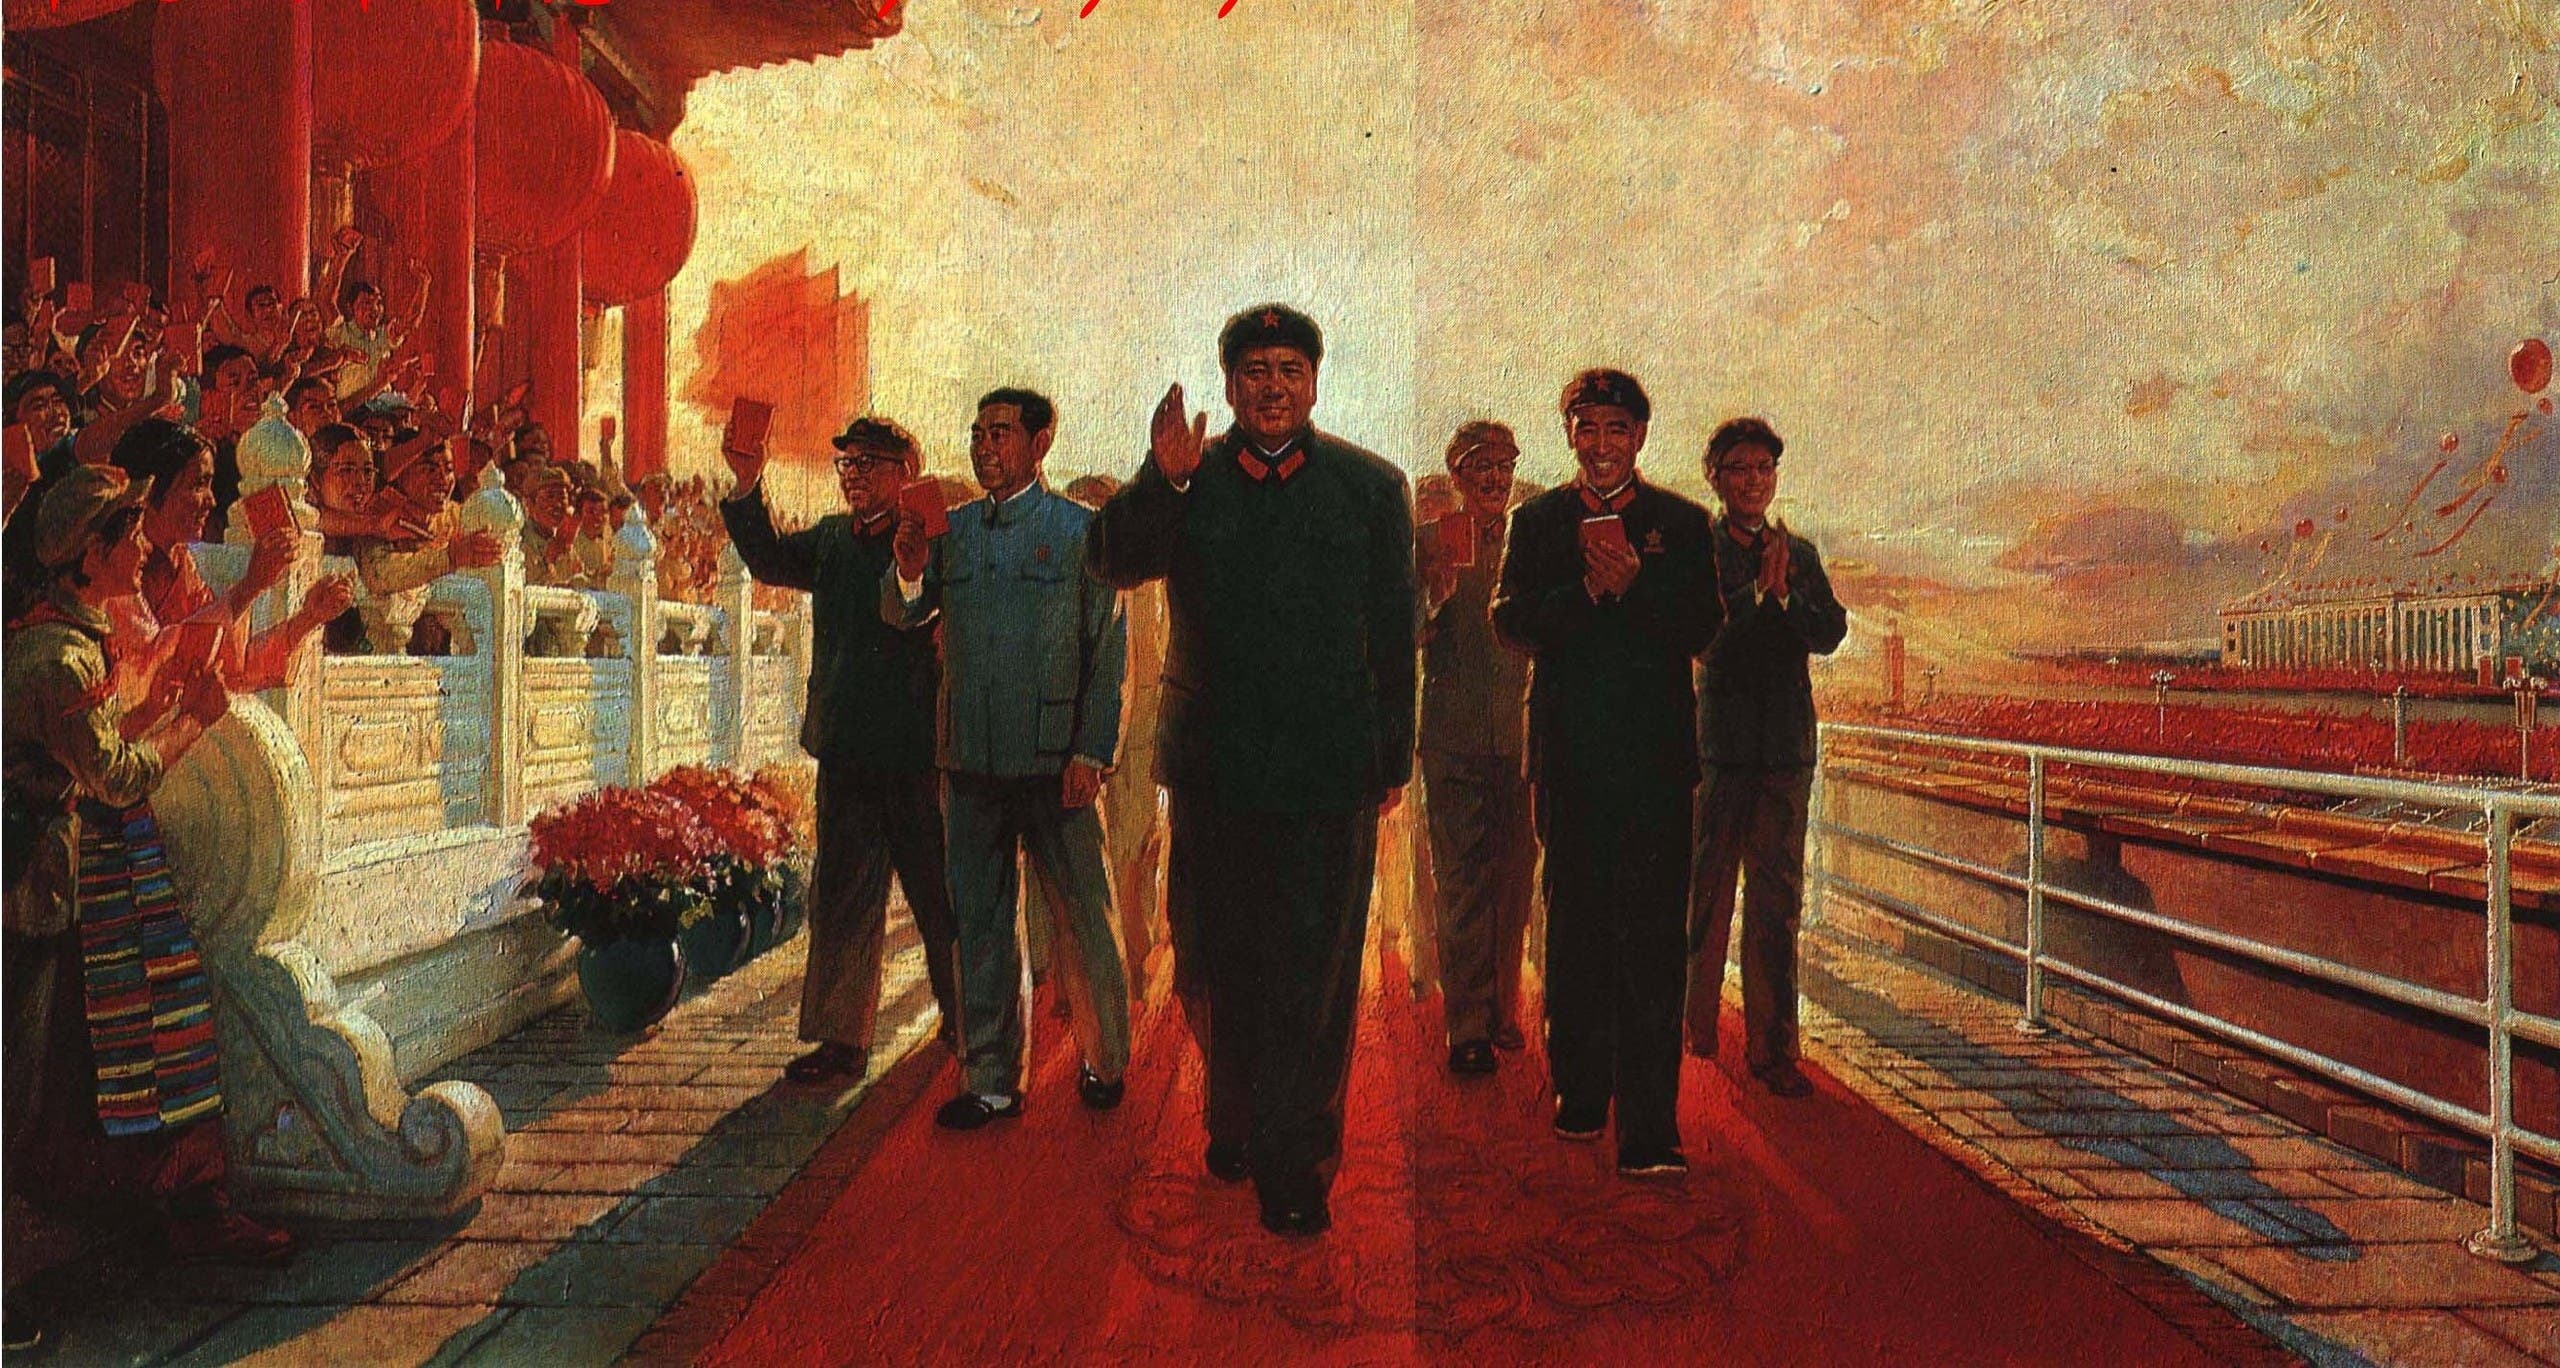 لوحة دعائية تجسد ماو تسي تونغ أثناء الثورة الثقافية